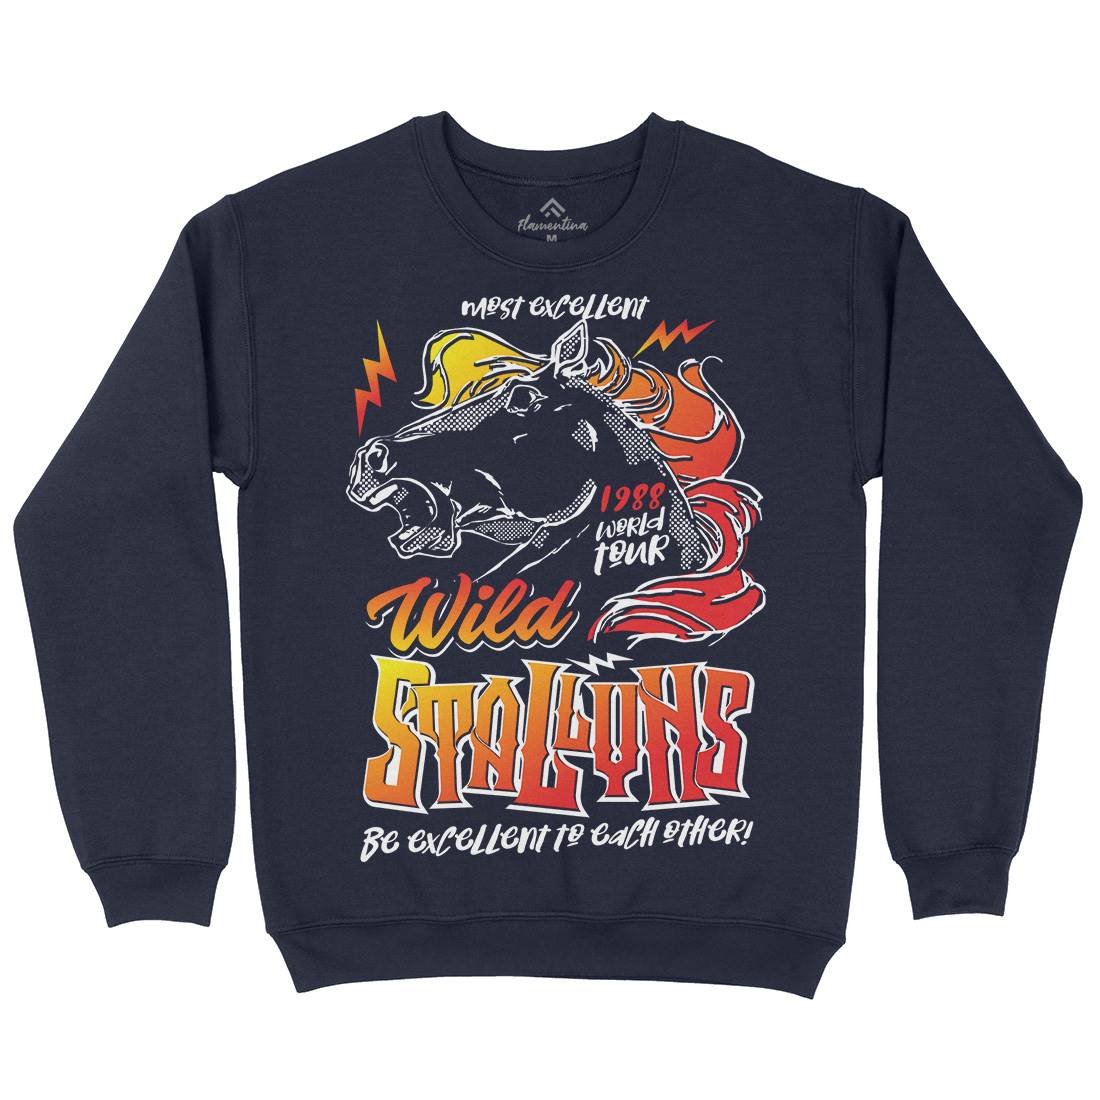 Wyld Stallyns Kids Crew Neck Sweatshirt Music D156